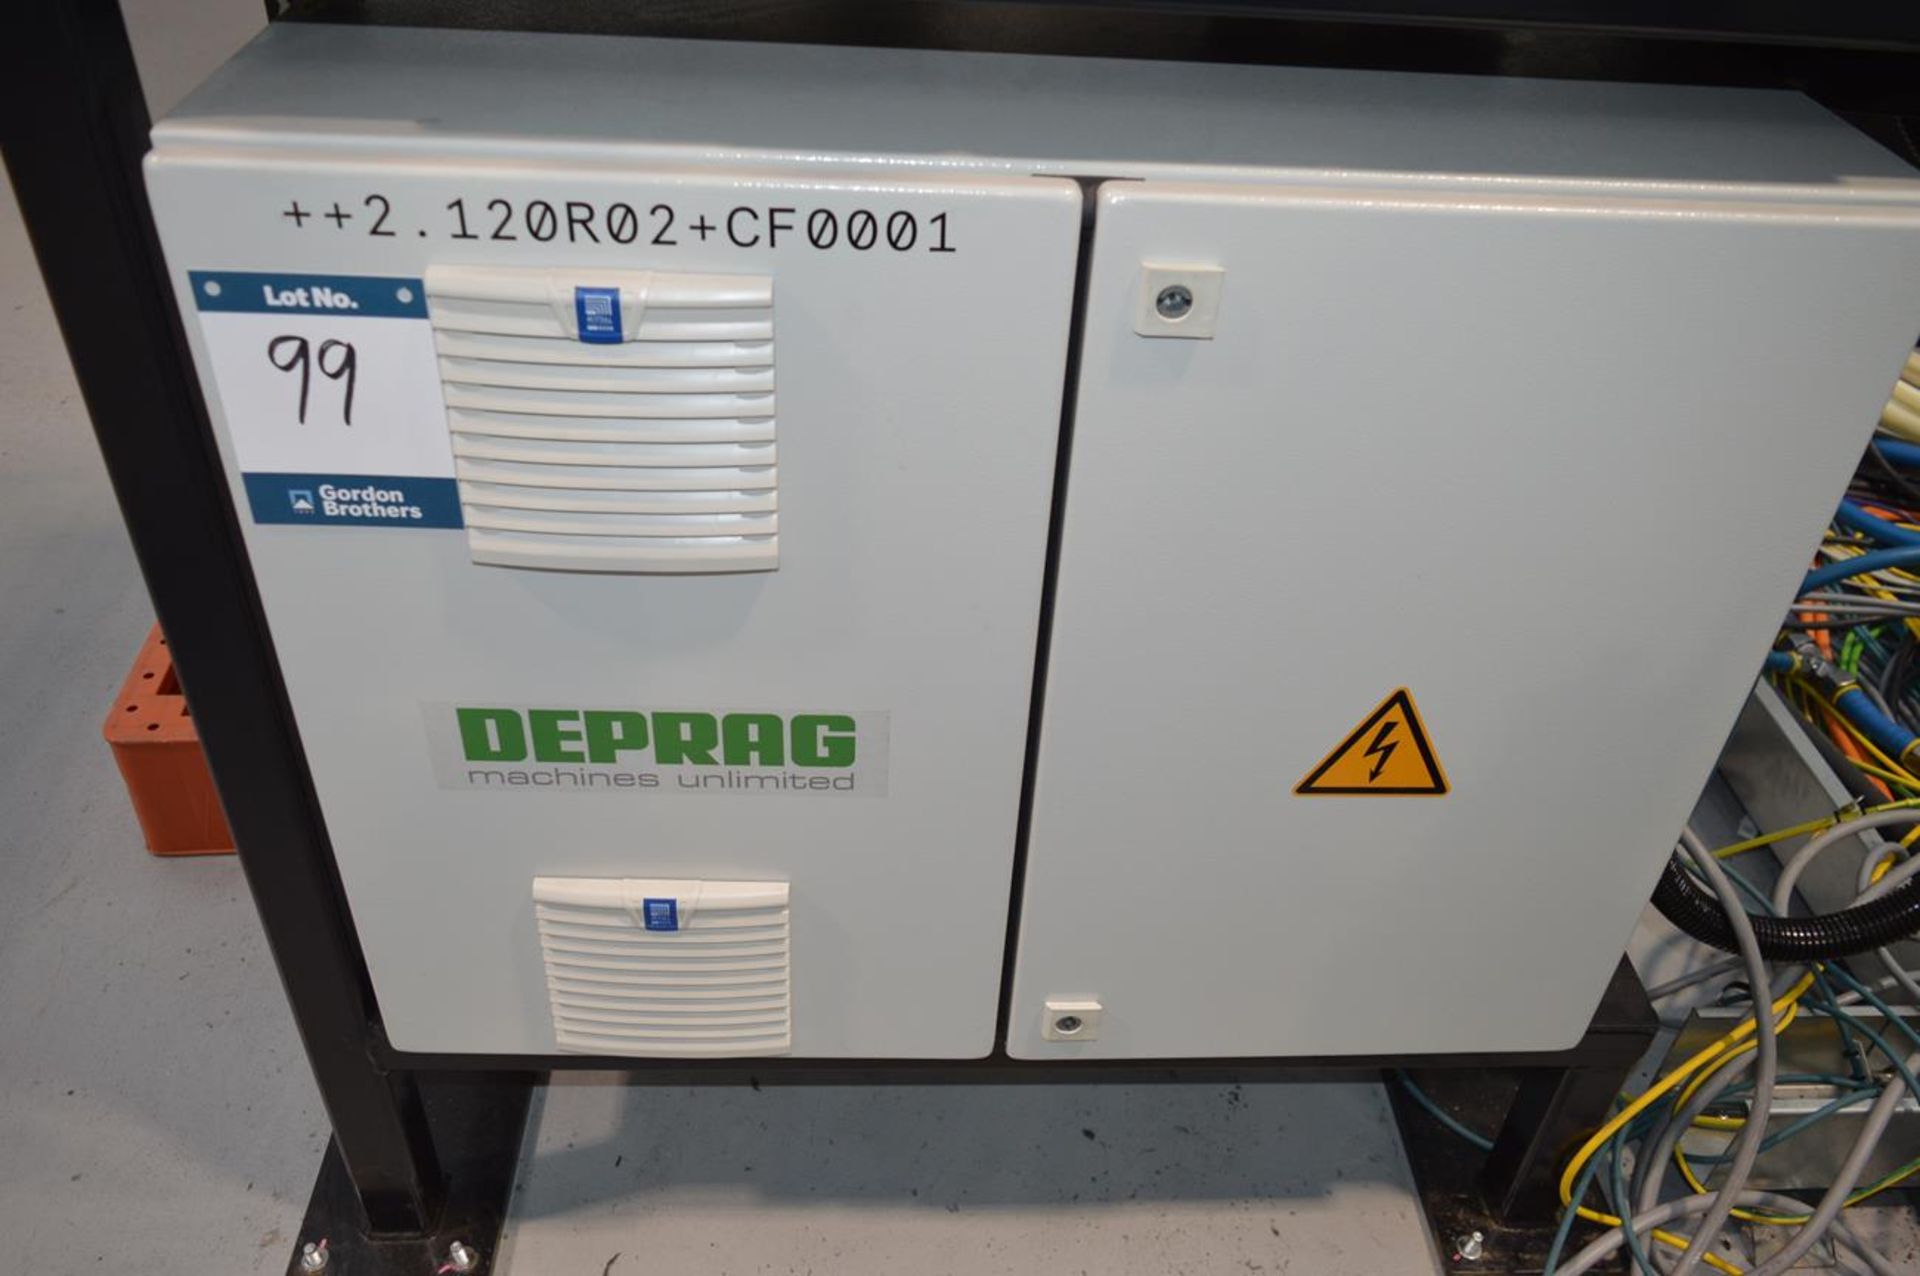 Deprag, ADFS-2-1508-1-0 Flowform adaptive DFS controller, Serial No. 1393276/21 with bolt fixing